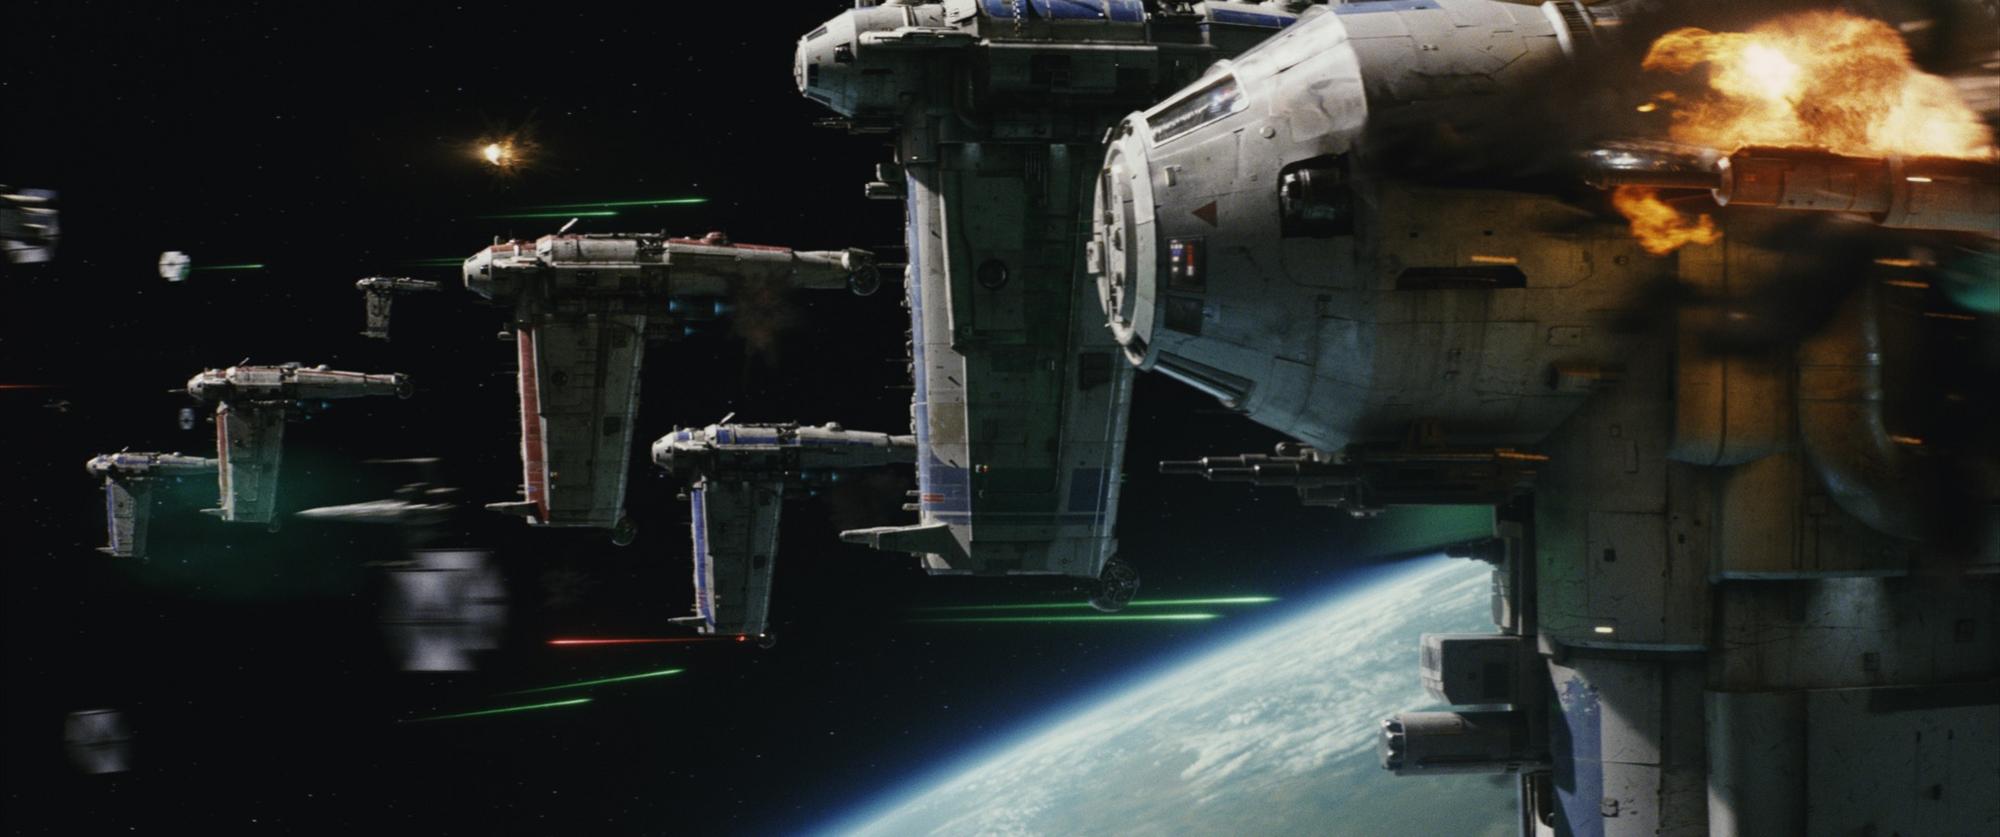 Nový Star Wars: Poslední Jediovia sa oplatí vidieť v kine. Vesmírne súboje vyzerajú parádne.